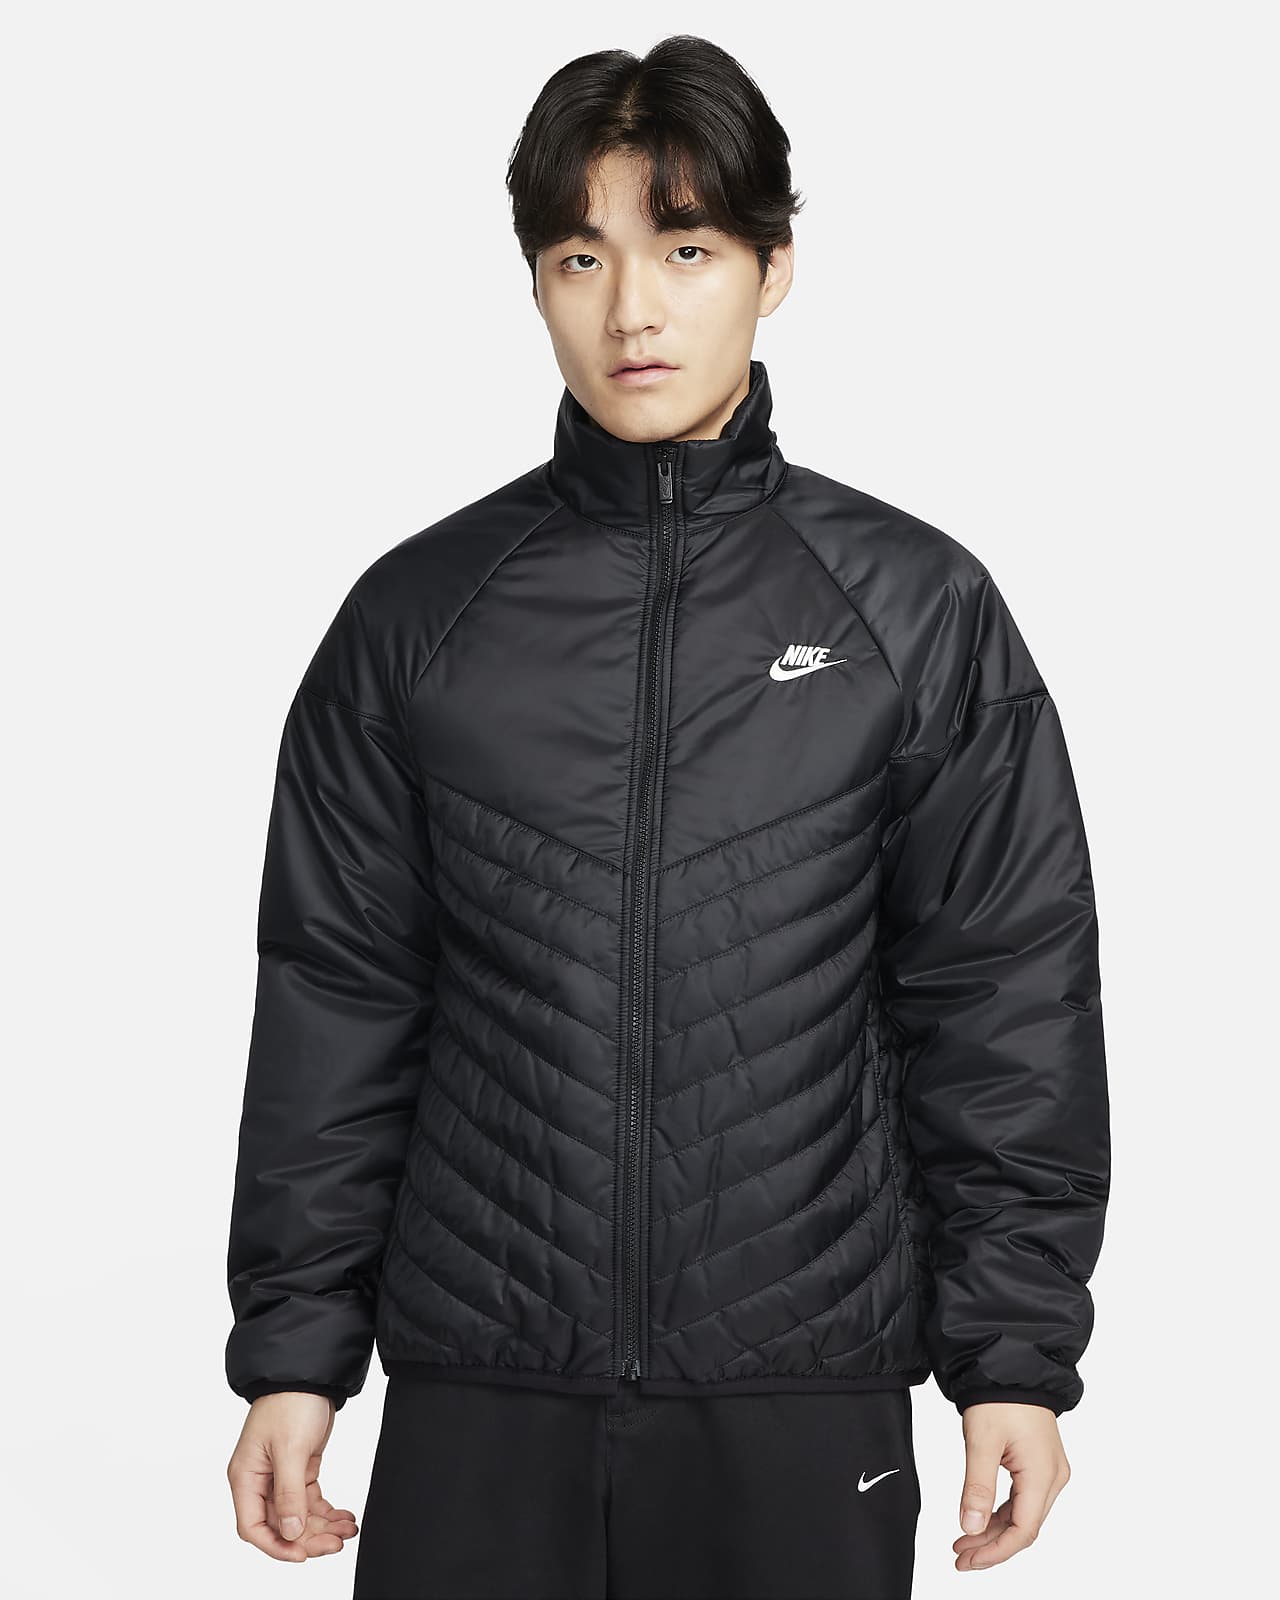 Coats & jackets | Men | Nike | Very Ireland